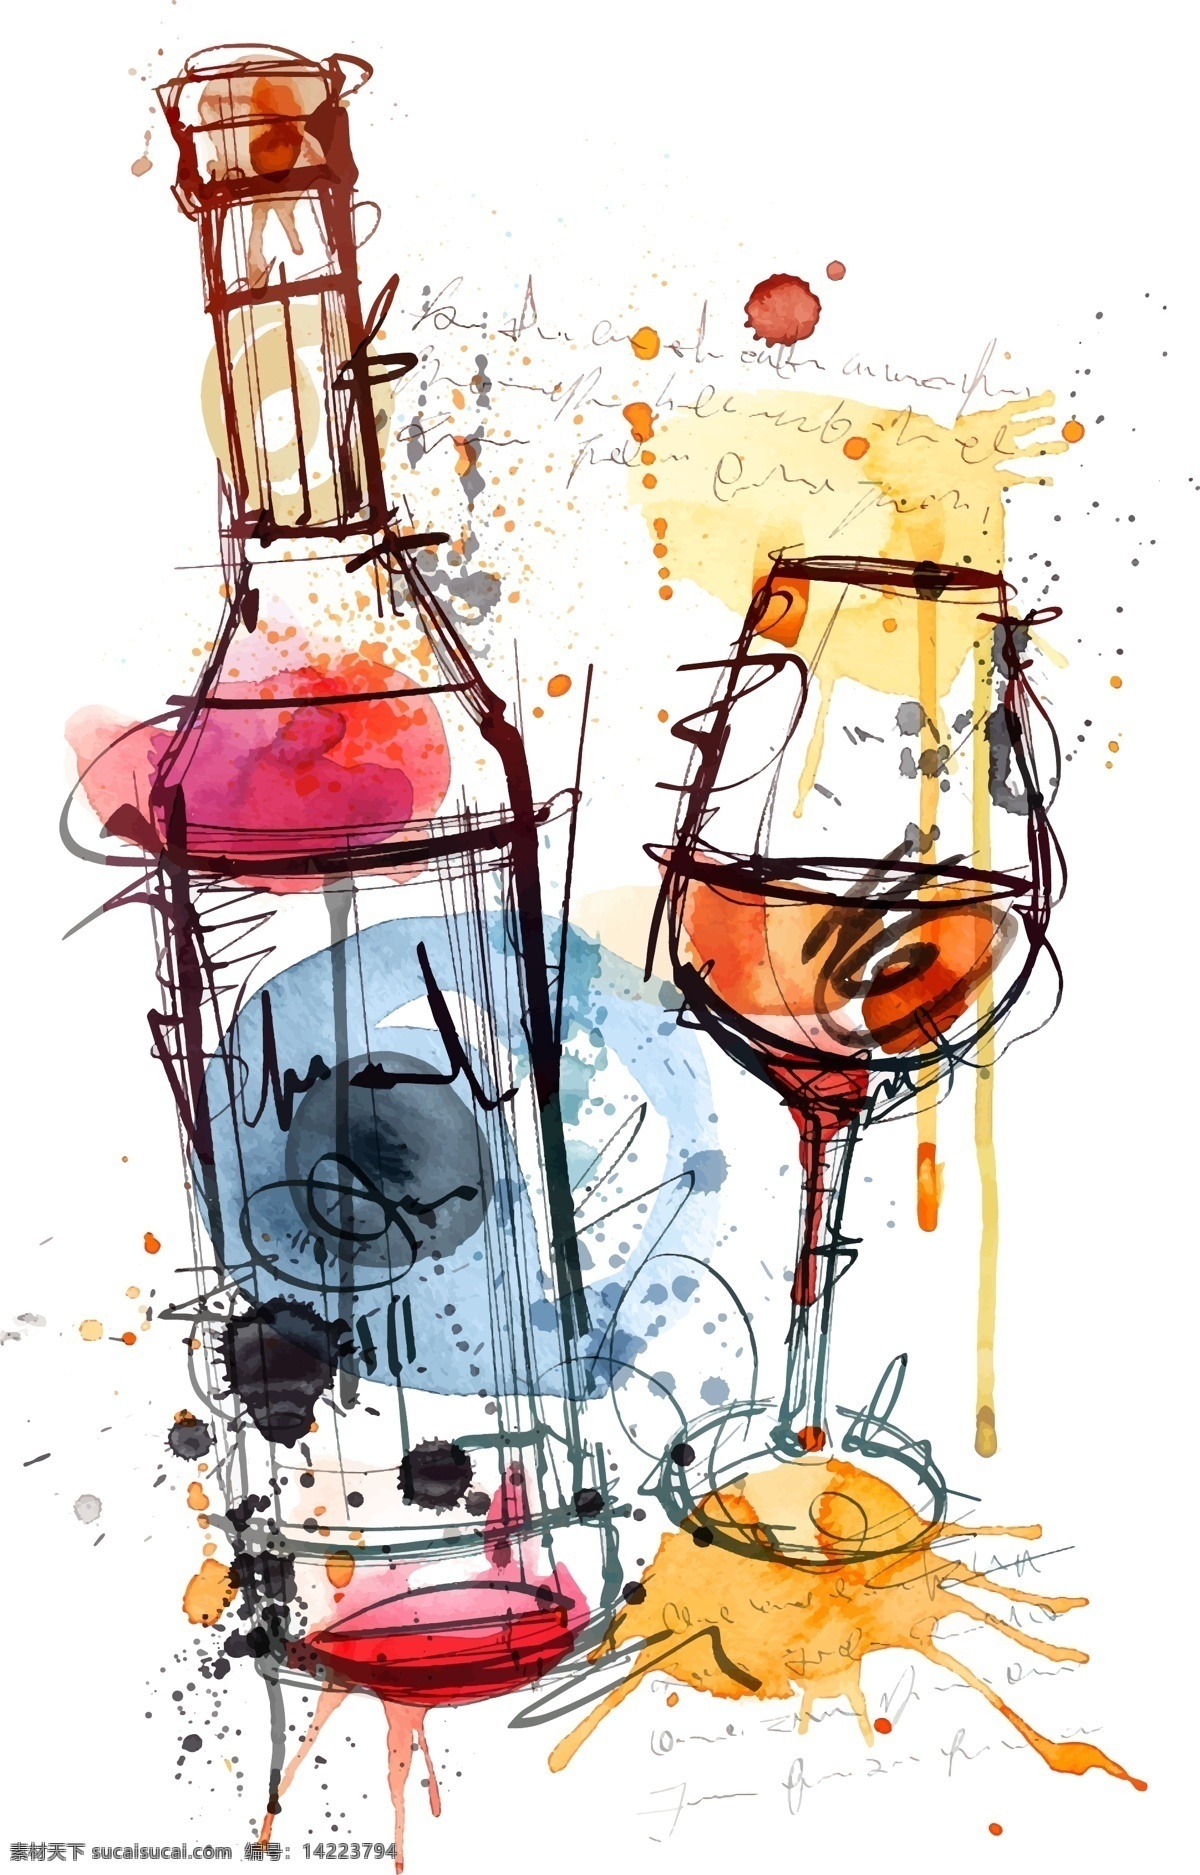 水彩 绘 红酒 杯子 插画 手绘 水彩绘 涂鸦 葡萄酒 红酒杯 高脚杯